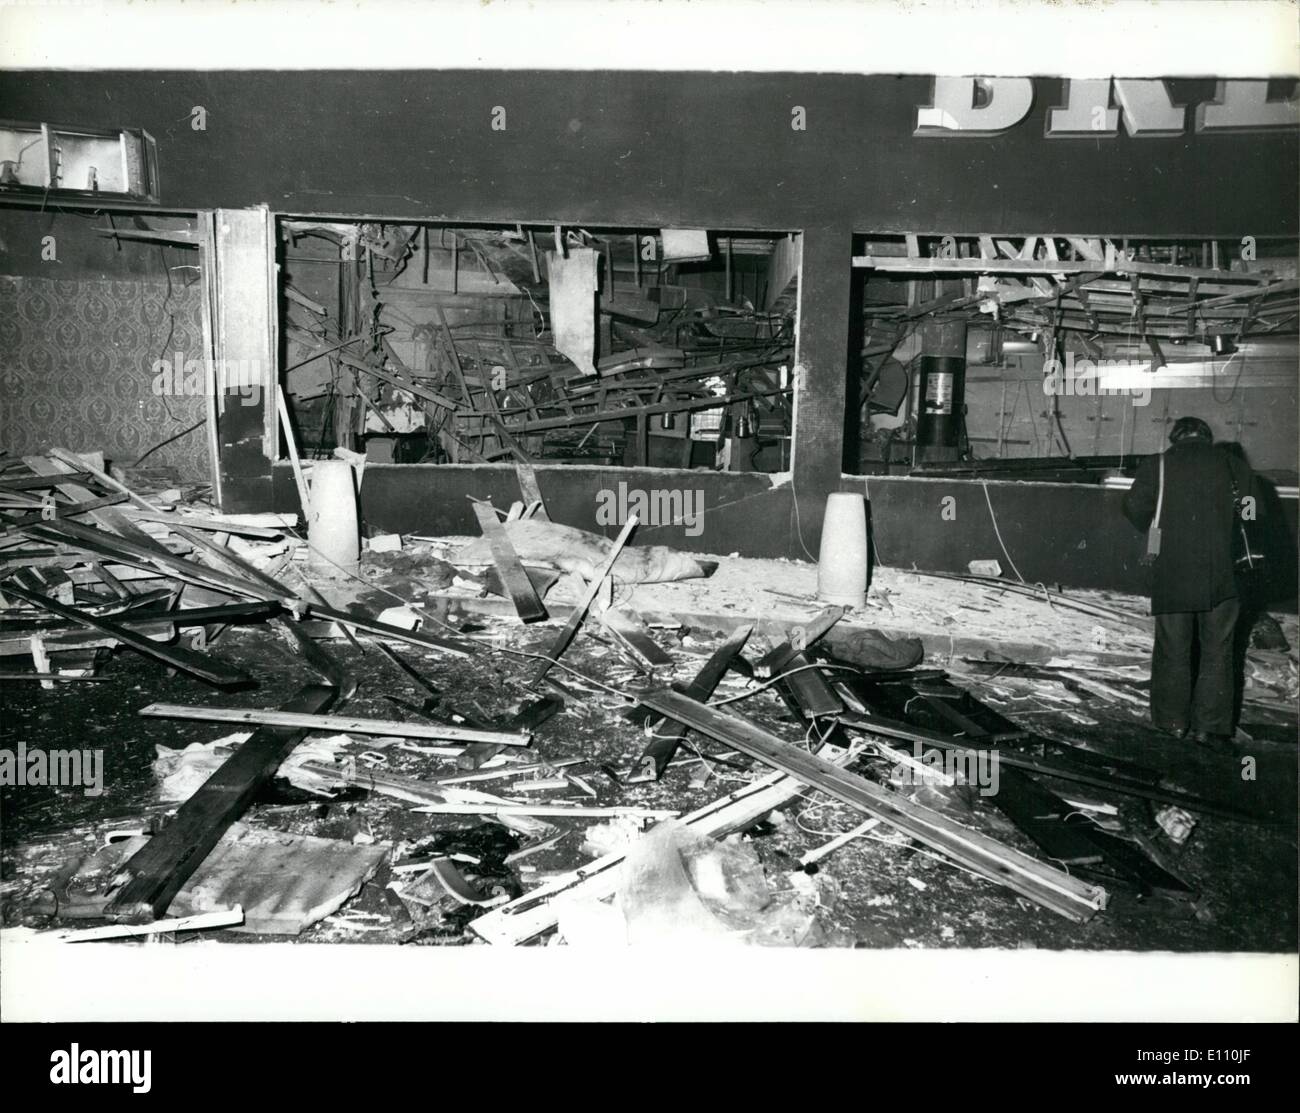 Nov. 11, 1974 - 19 morti e molti feriti in attentati dinamitardi a Birmingham.: 19 persone sono state uccise e 200 feriti da IRA le bombe dei terroristi che è esplosa in due case pubbliche nel centro di Birmingham la scorsa notte. Una bomba è stata al Mulberry Bush public house e l'altra presso la taverna della città. La foto mostra una vista che mostra la devastazione all'interno della boccola di gelso public house, dopo l'ultima notte di esplosione in Birmingham. Foto Stock